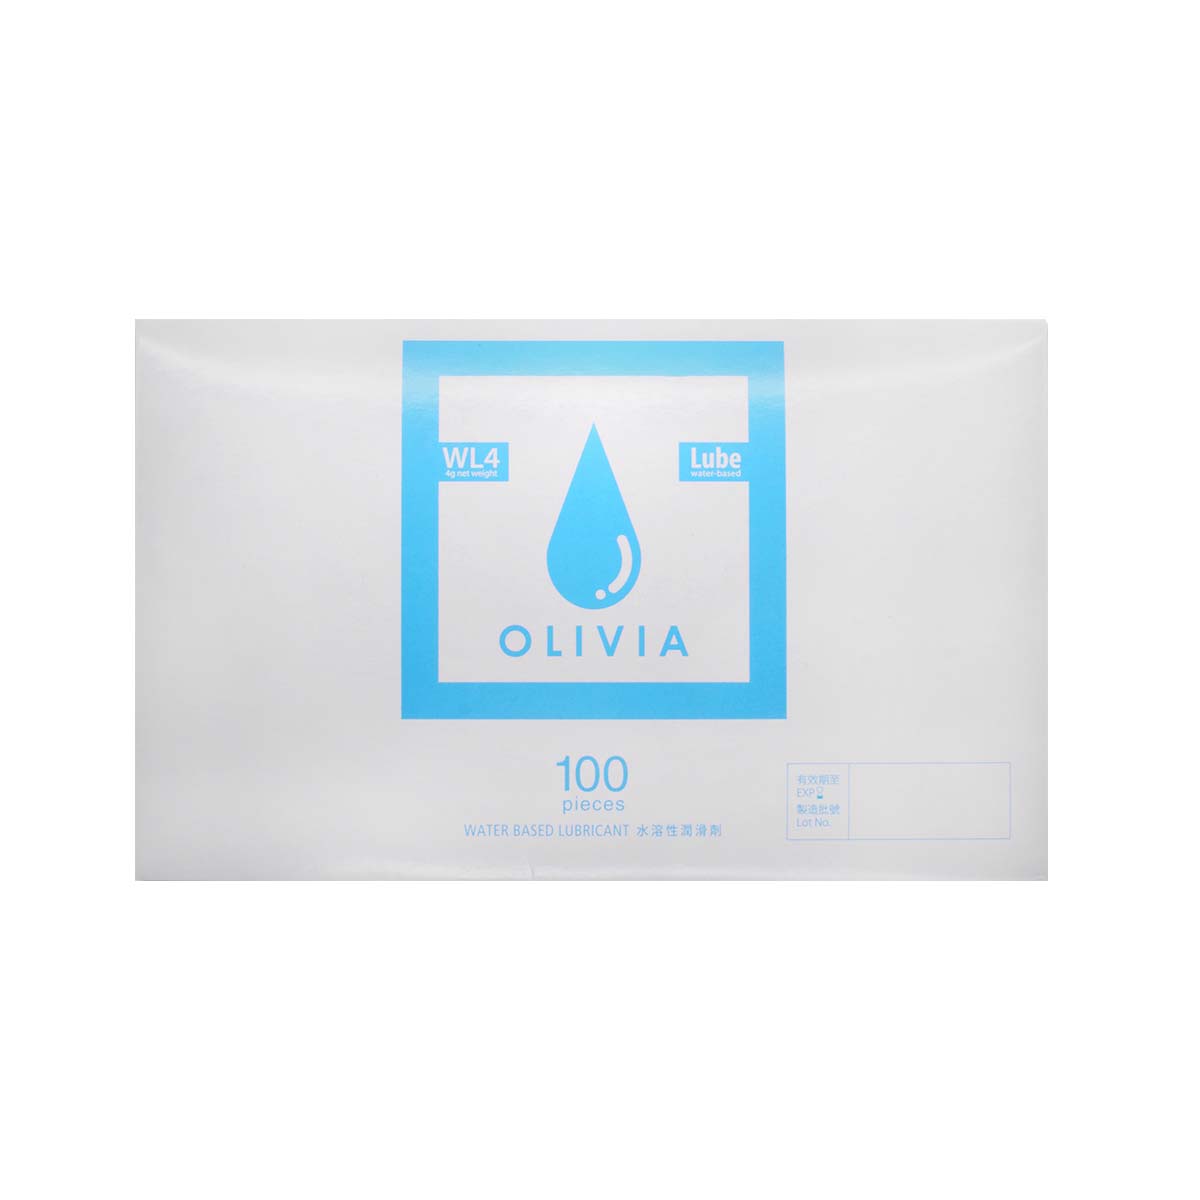 奥莉维亚 WL4 旅行小包装 100 片装 水基润滑剂 (短效期)-p_2